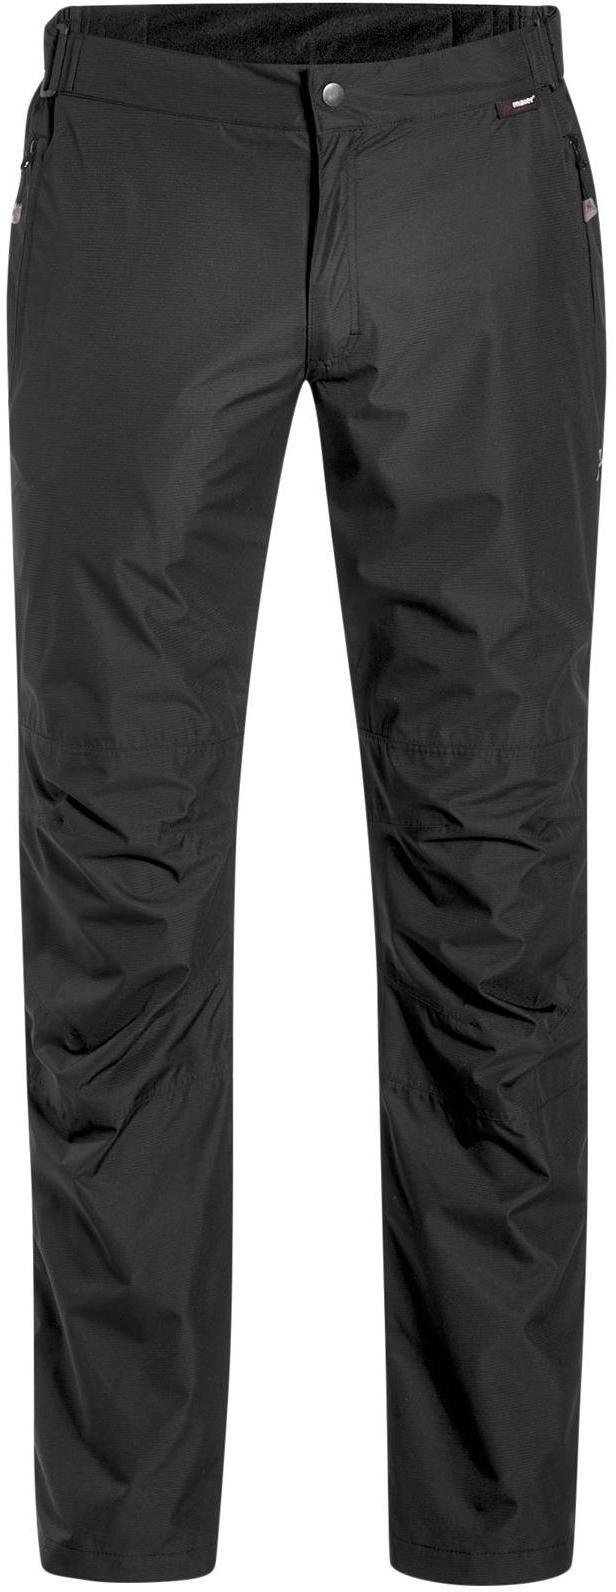 фото Спортивные брюки мужские maier sports 137902_0900 черные 52 eu